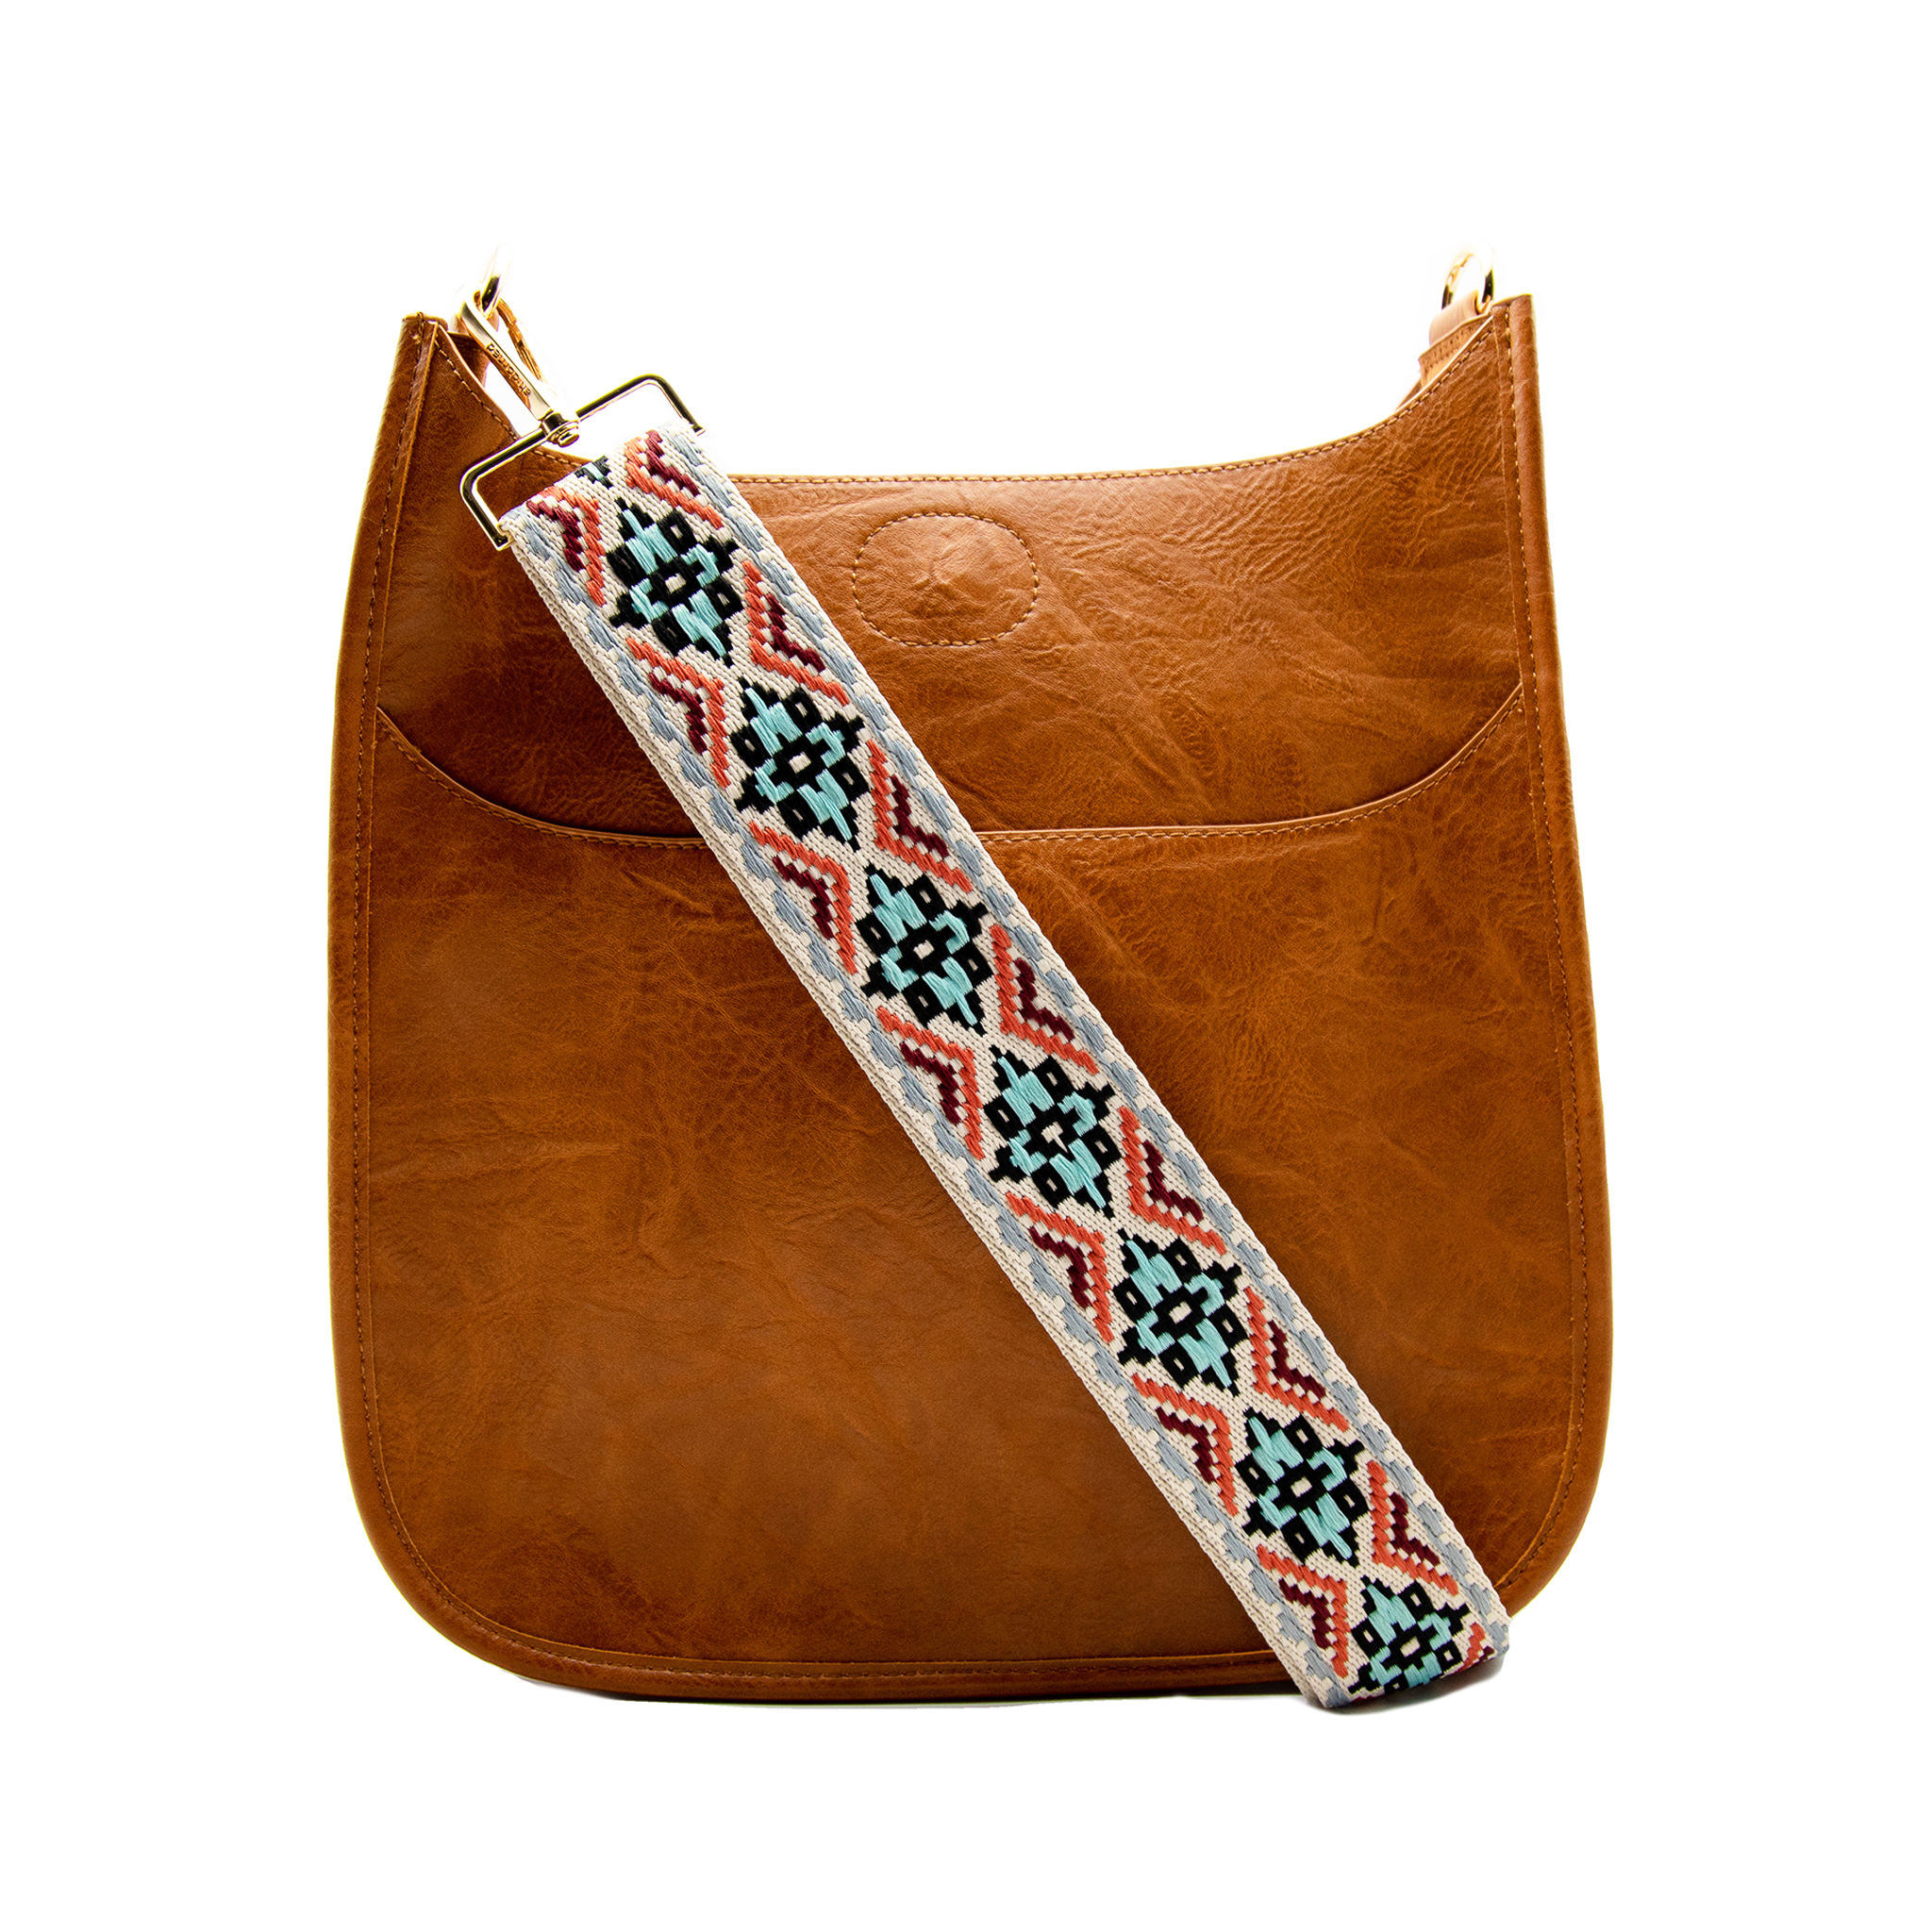 Ahdorned Vegan Leather Messenger Bag With Leopard Print Strap - Camel